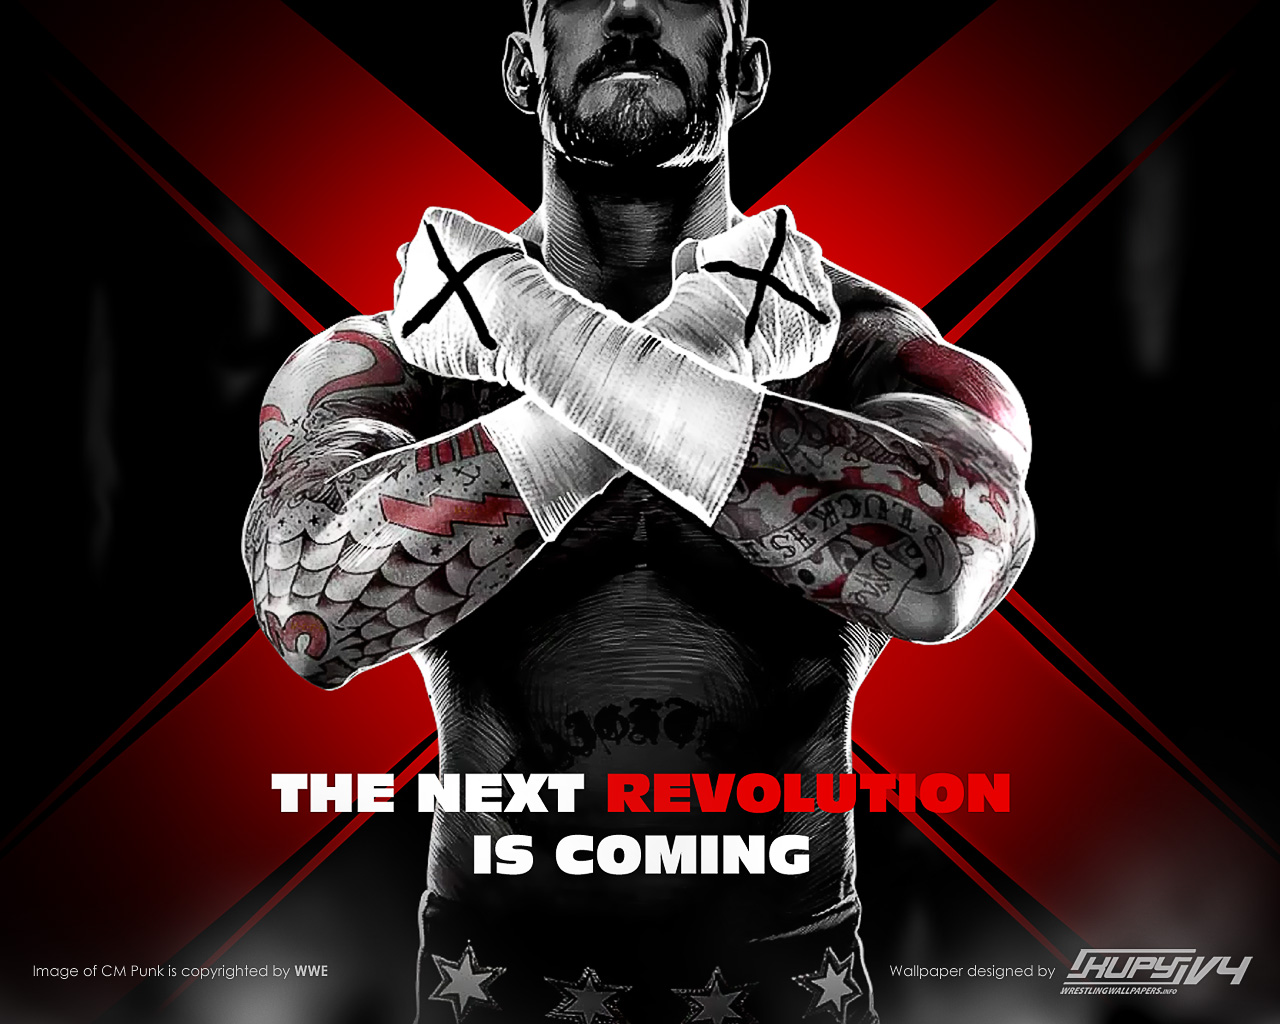 NEW Bray Wyatt “White Rabbit” 2022 logo wallpaper! - Kupy Wrestling  Wallpapers